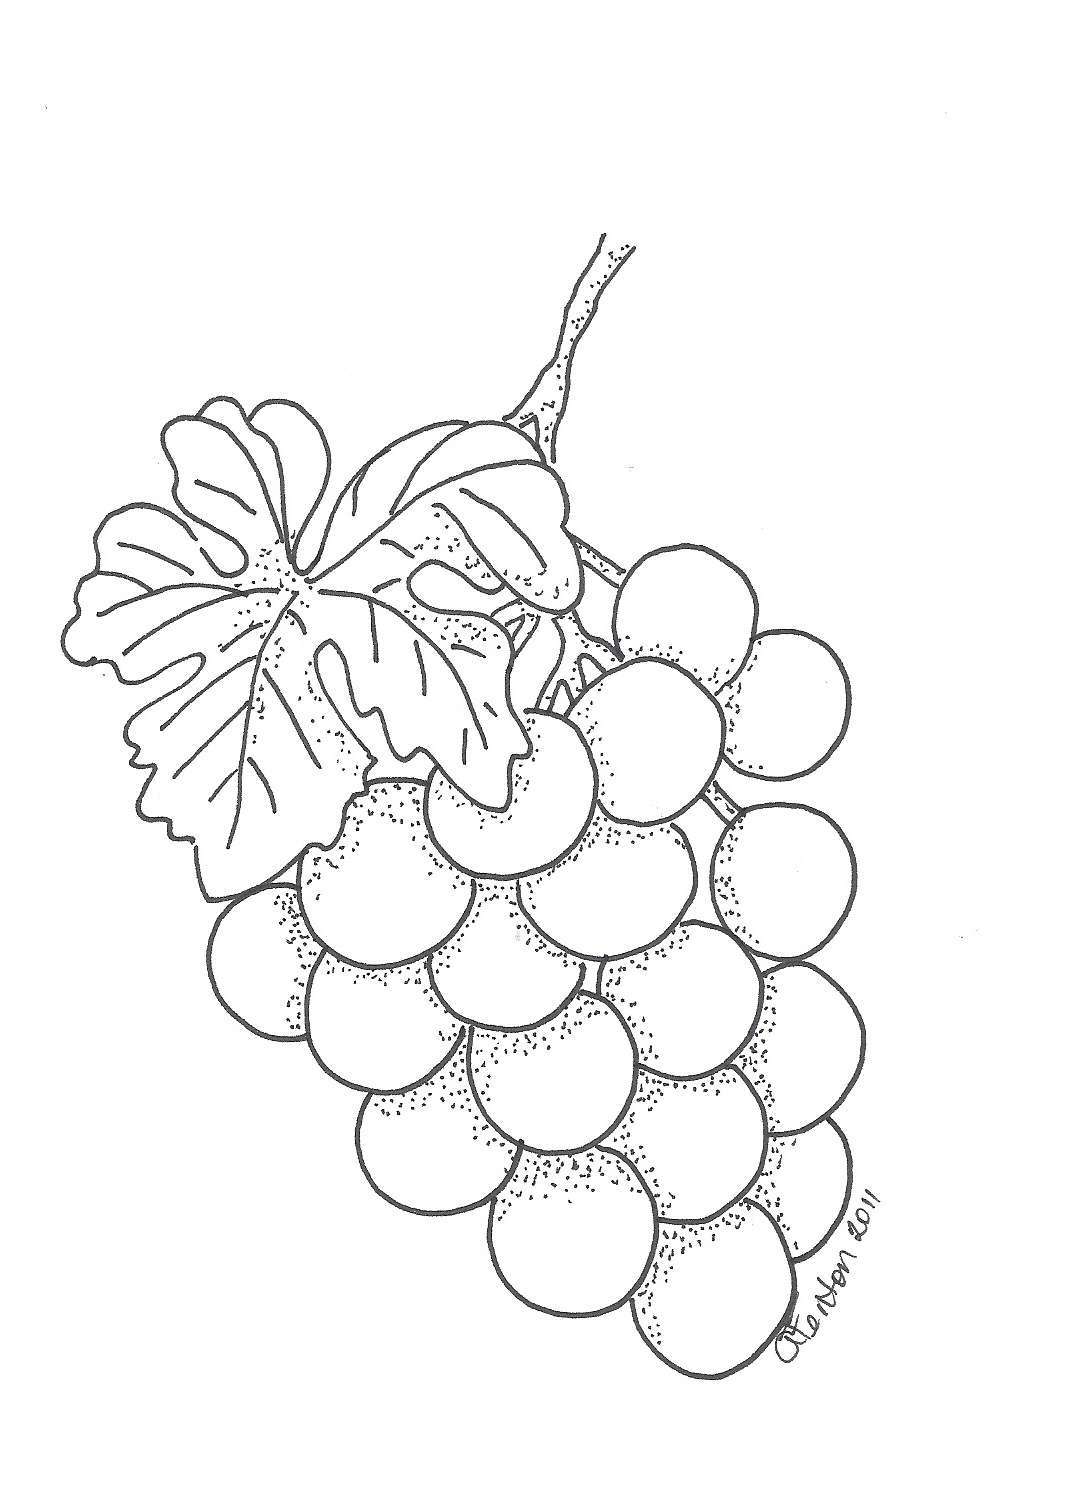 Disegno dell'uva